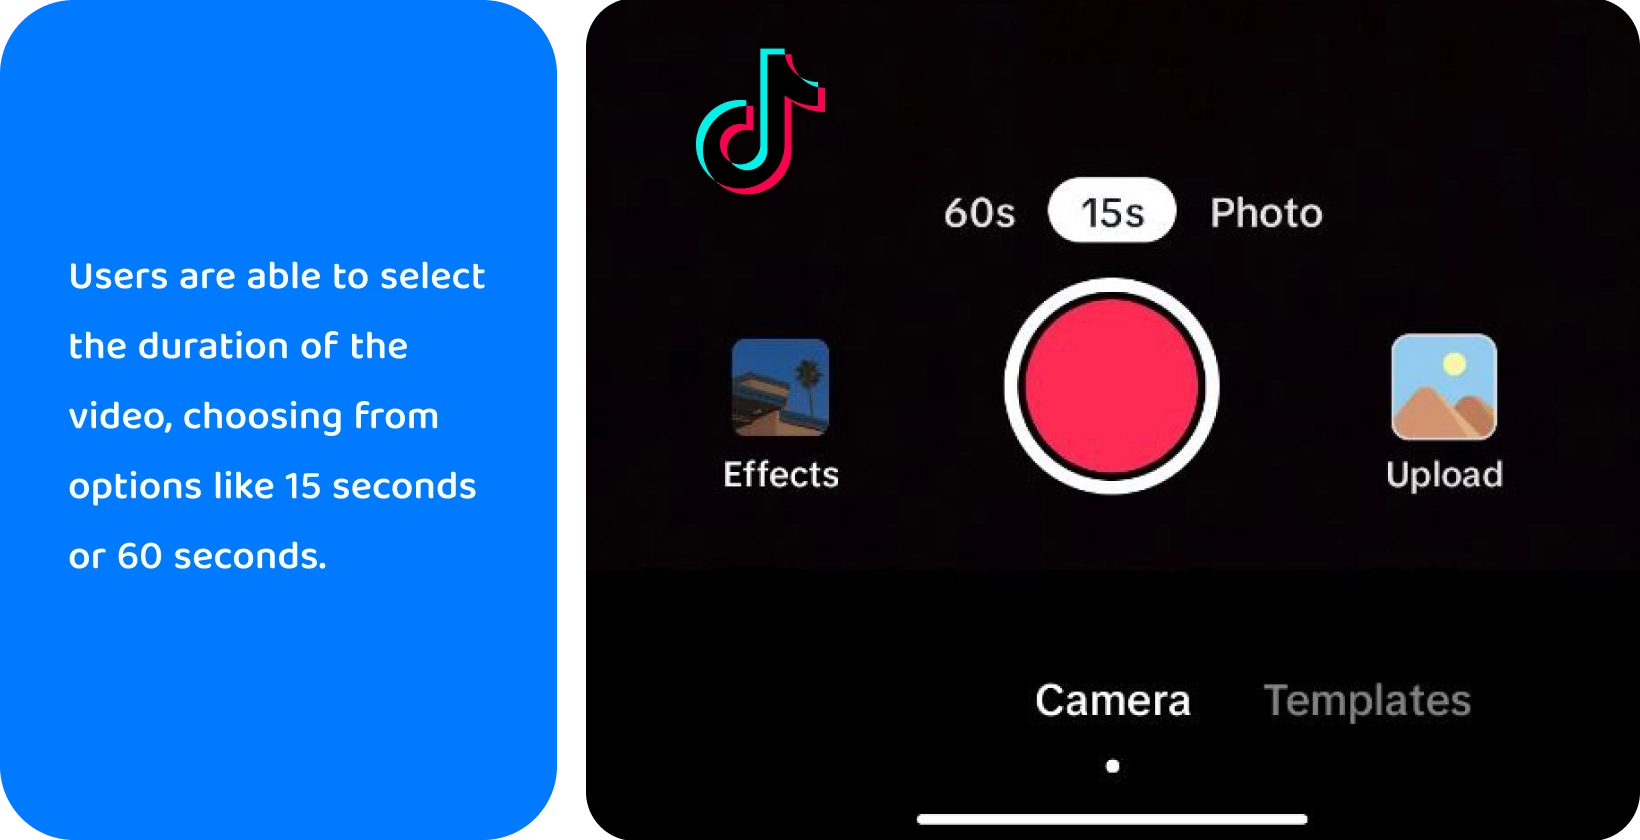 Nahrávací rozhraní TikTok s možnostmi přidání zvuku, převrácení kamery, použití filtrů, použití časovače a dalších pro kreativní tvorbu videa.
